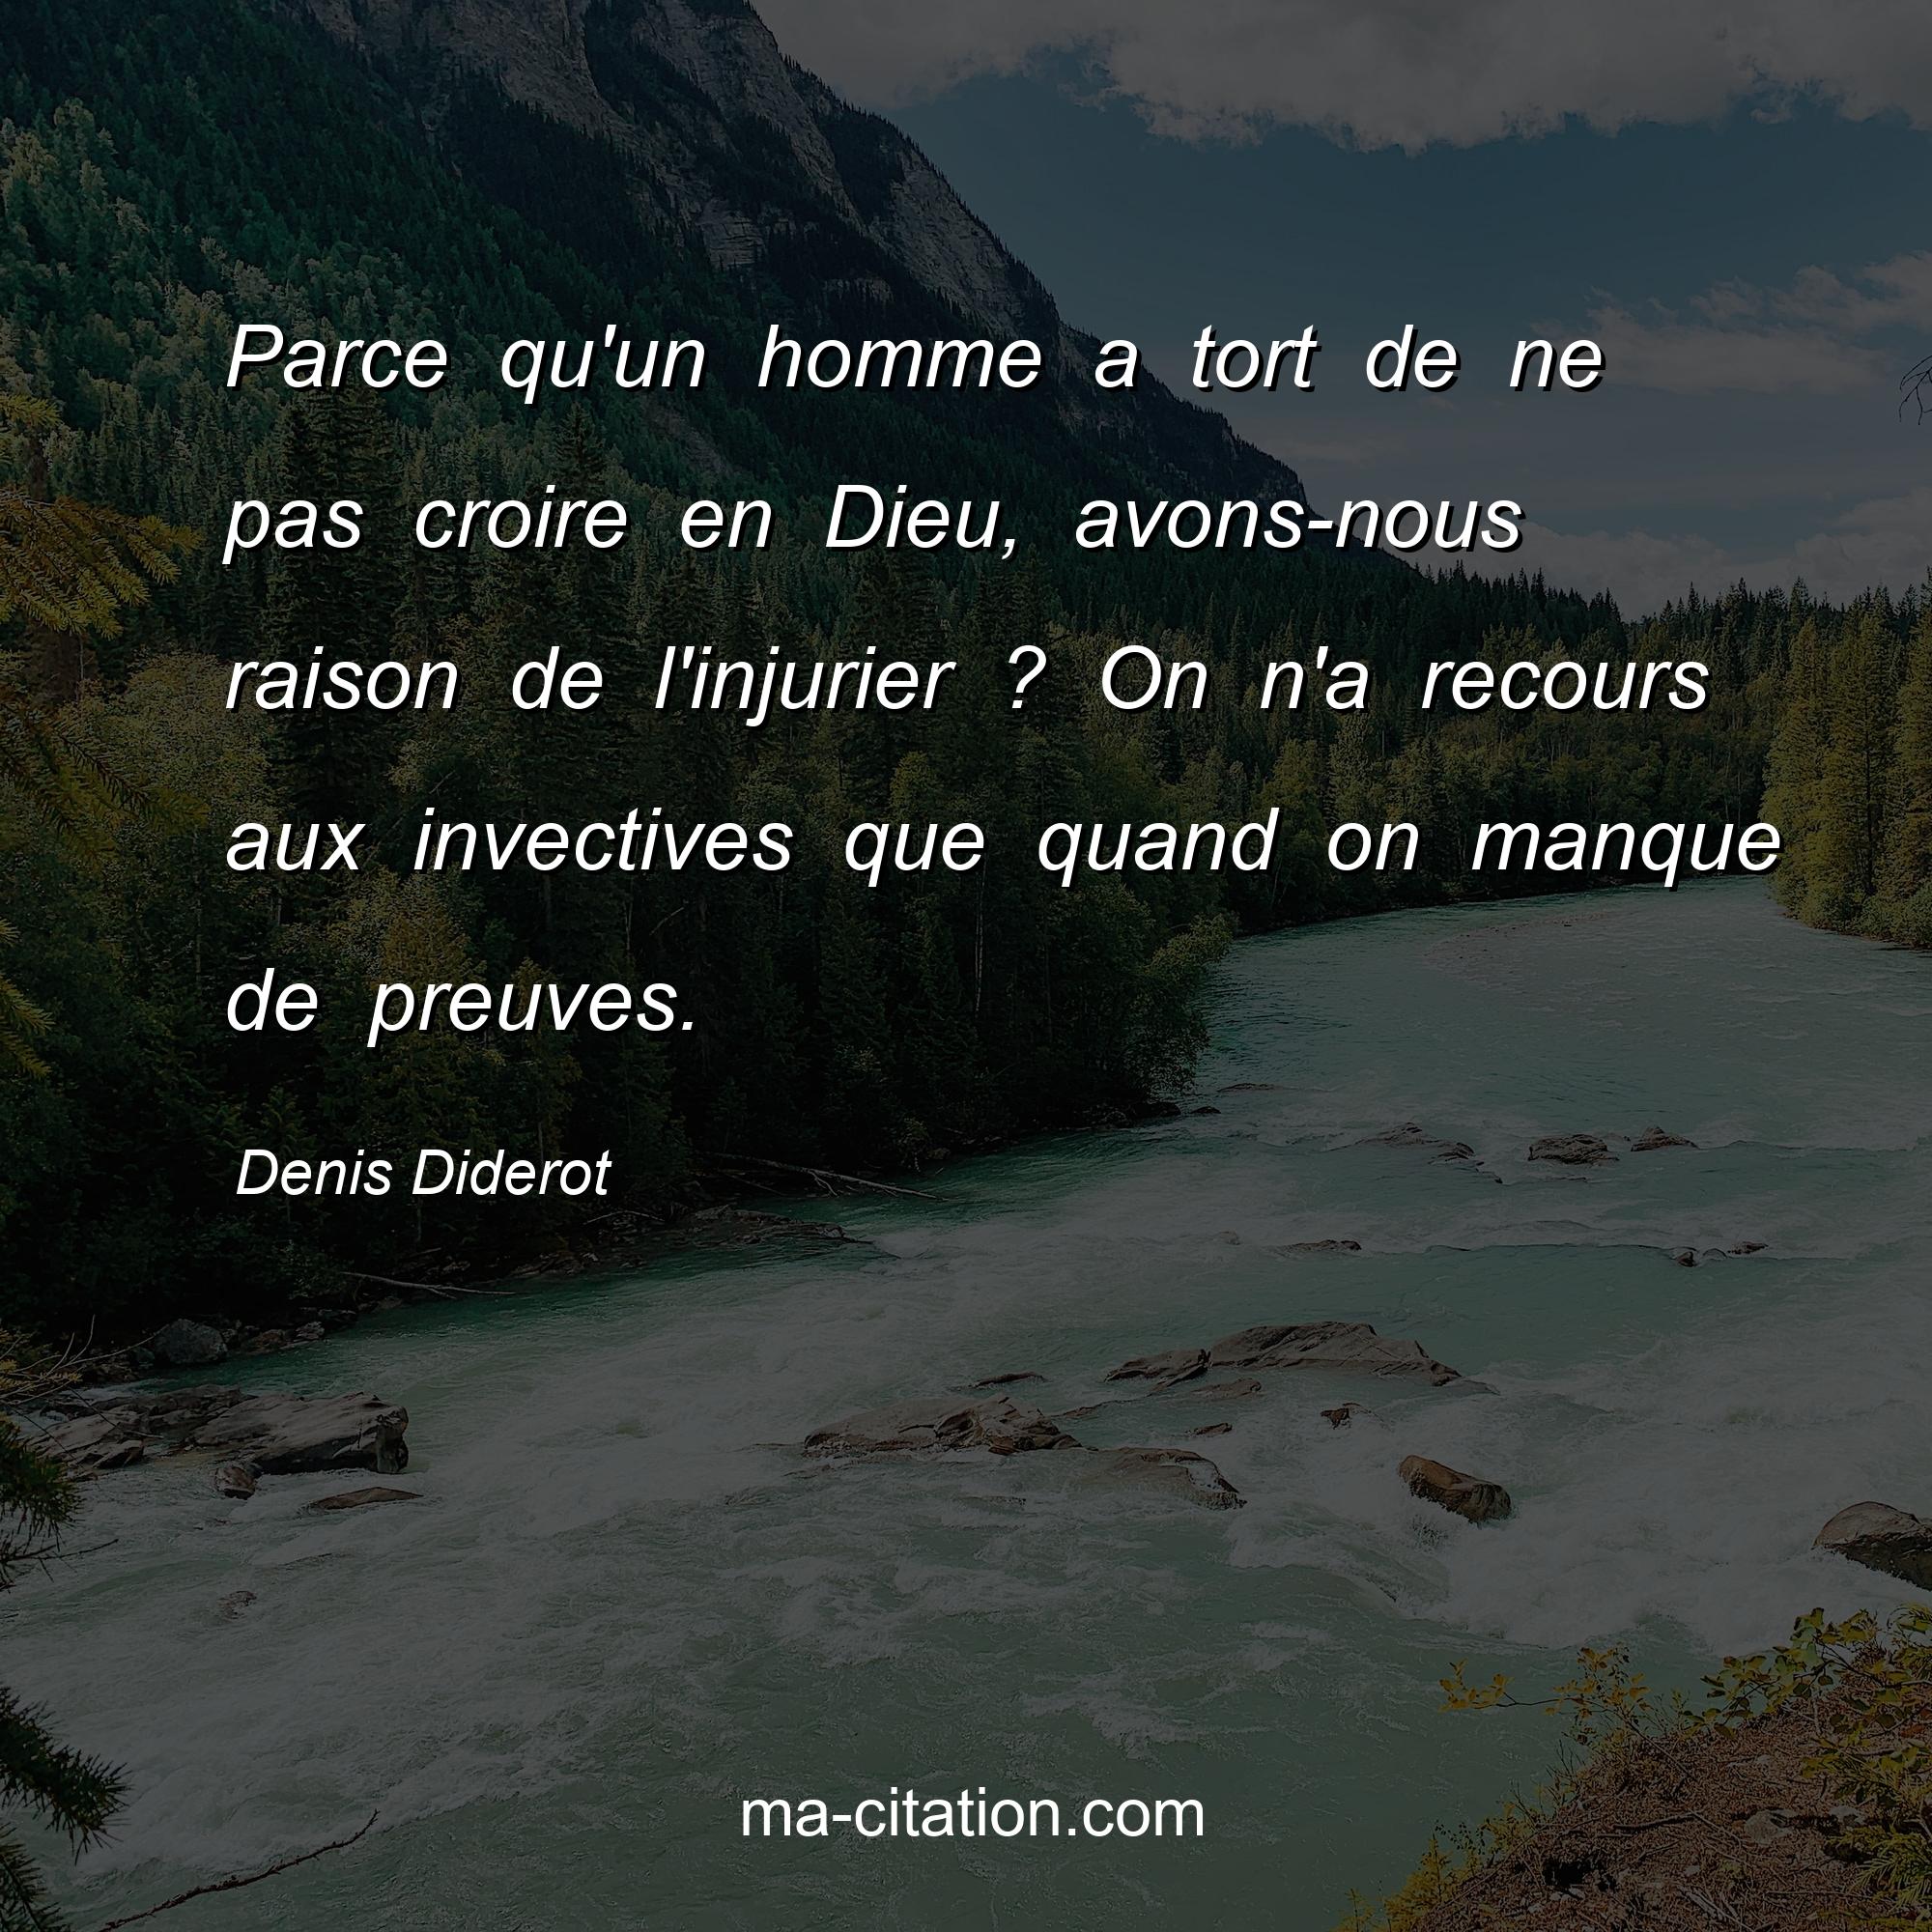 Denis Diderot : Parce qu'un homme a tort de ne pas croire en Dieu, avons-nous raison de l'injurier ? On n'a recours aux invectives que quand on manque de preuves.